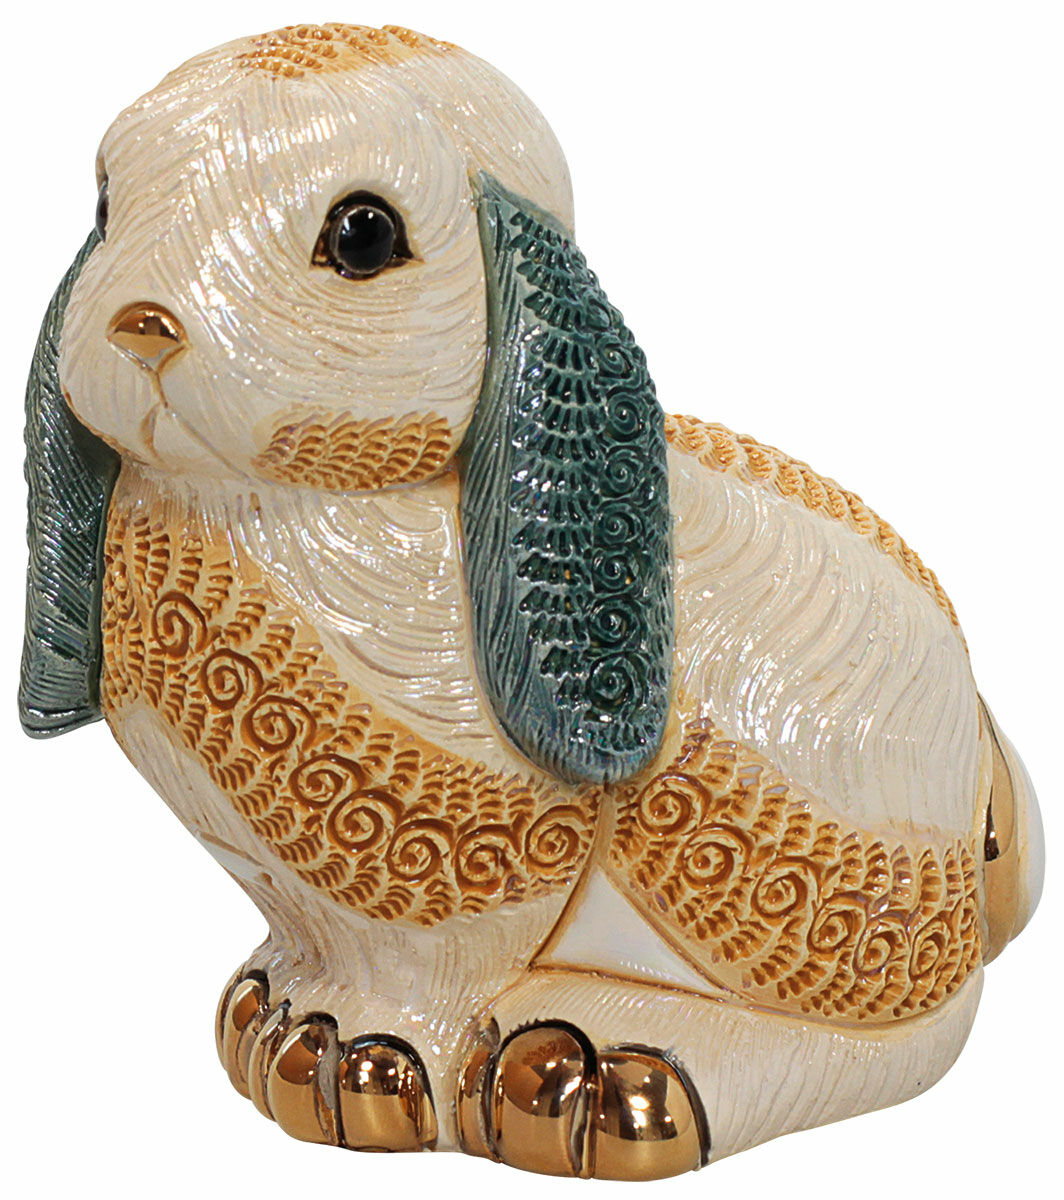 Buy Ceramic figurine Rabbit